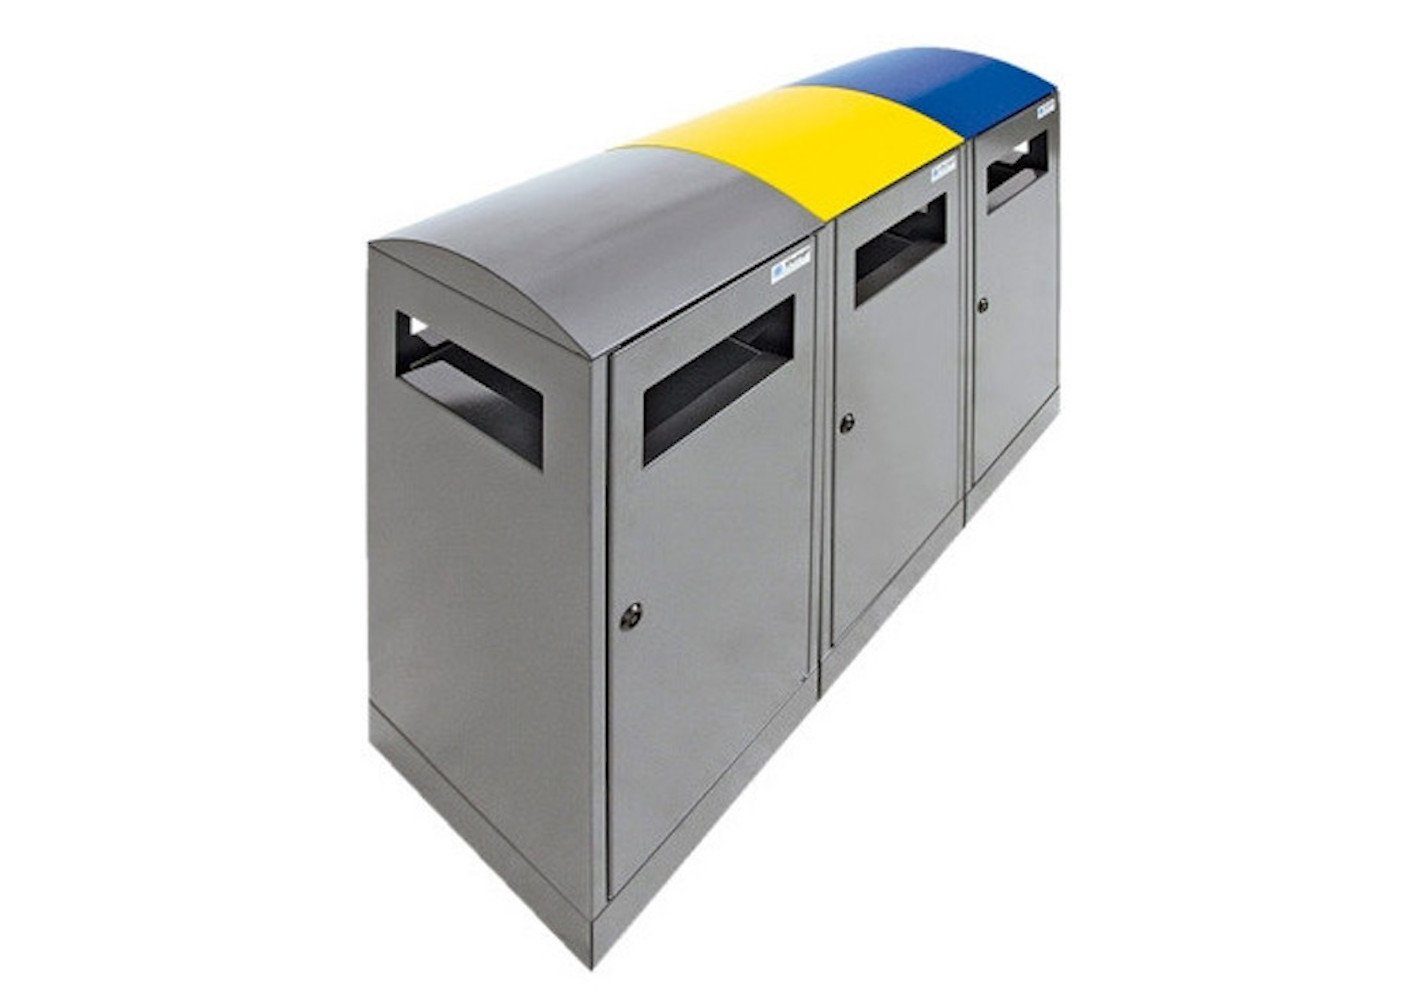 Proregal Mülltrennsystem Abfallbehälter für Außenbereiche, 3x40L, HxBxT 81x105x35cm, Blau/Gelb